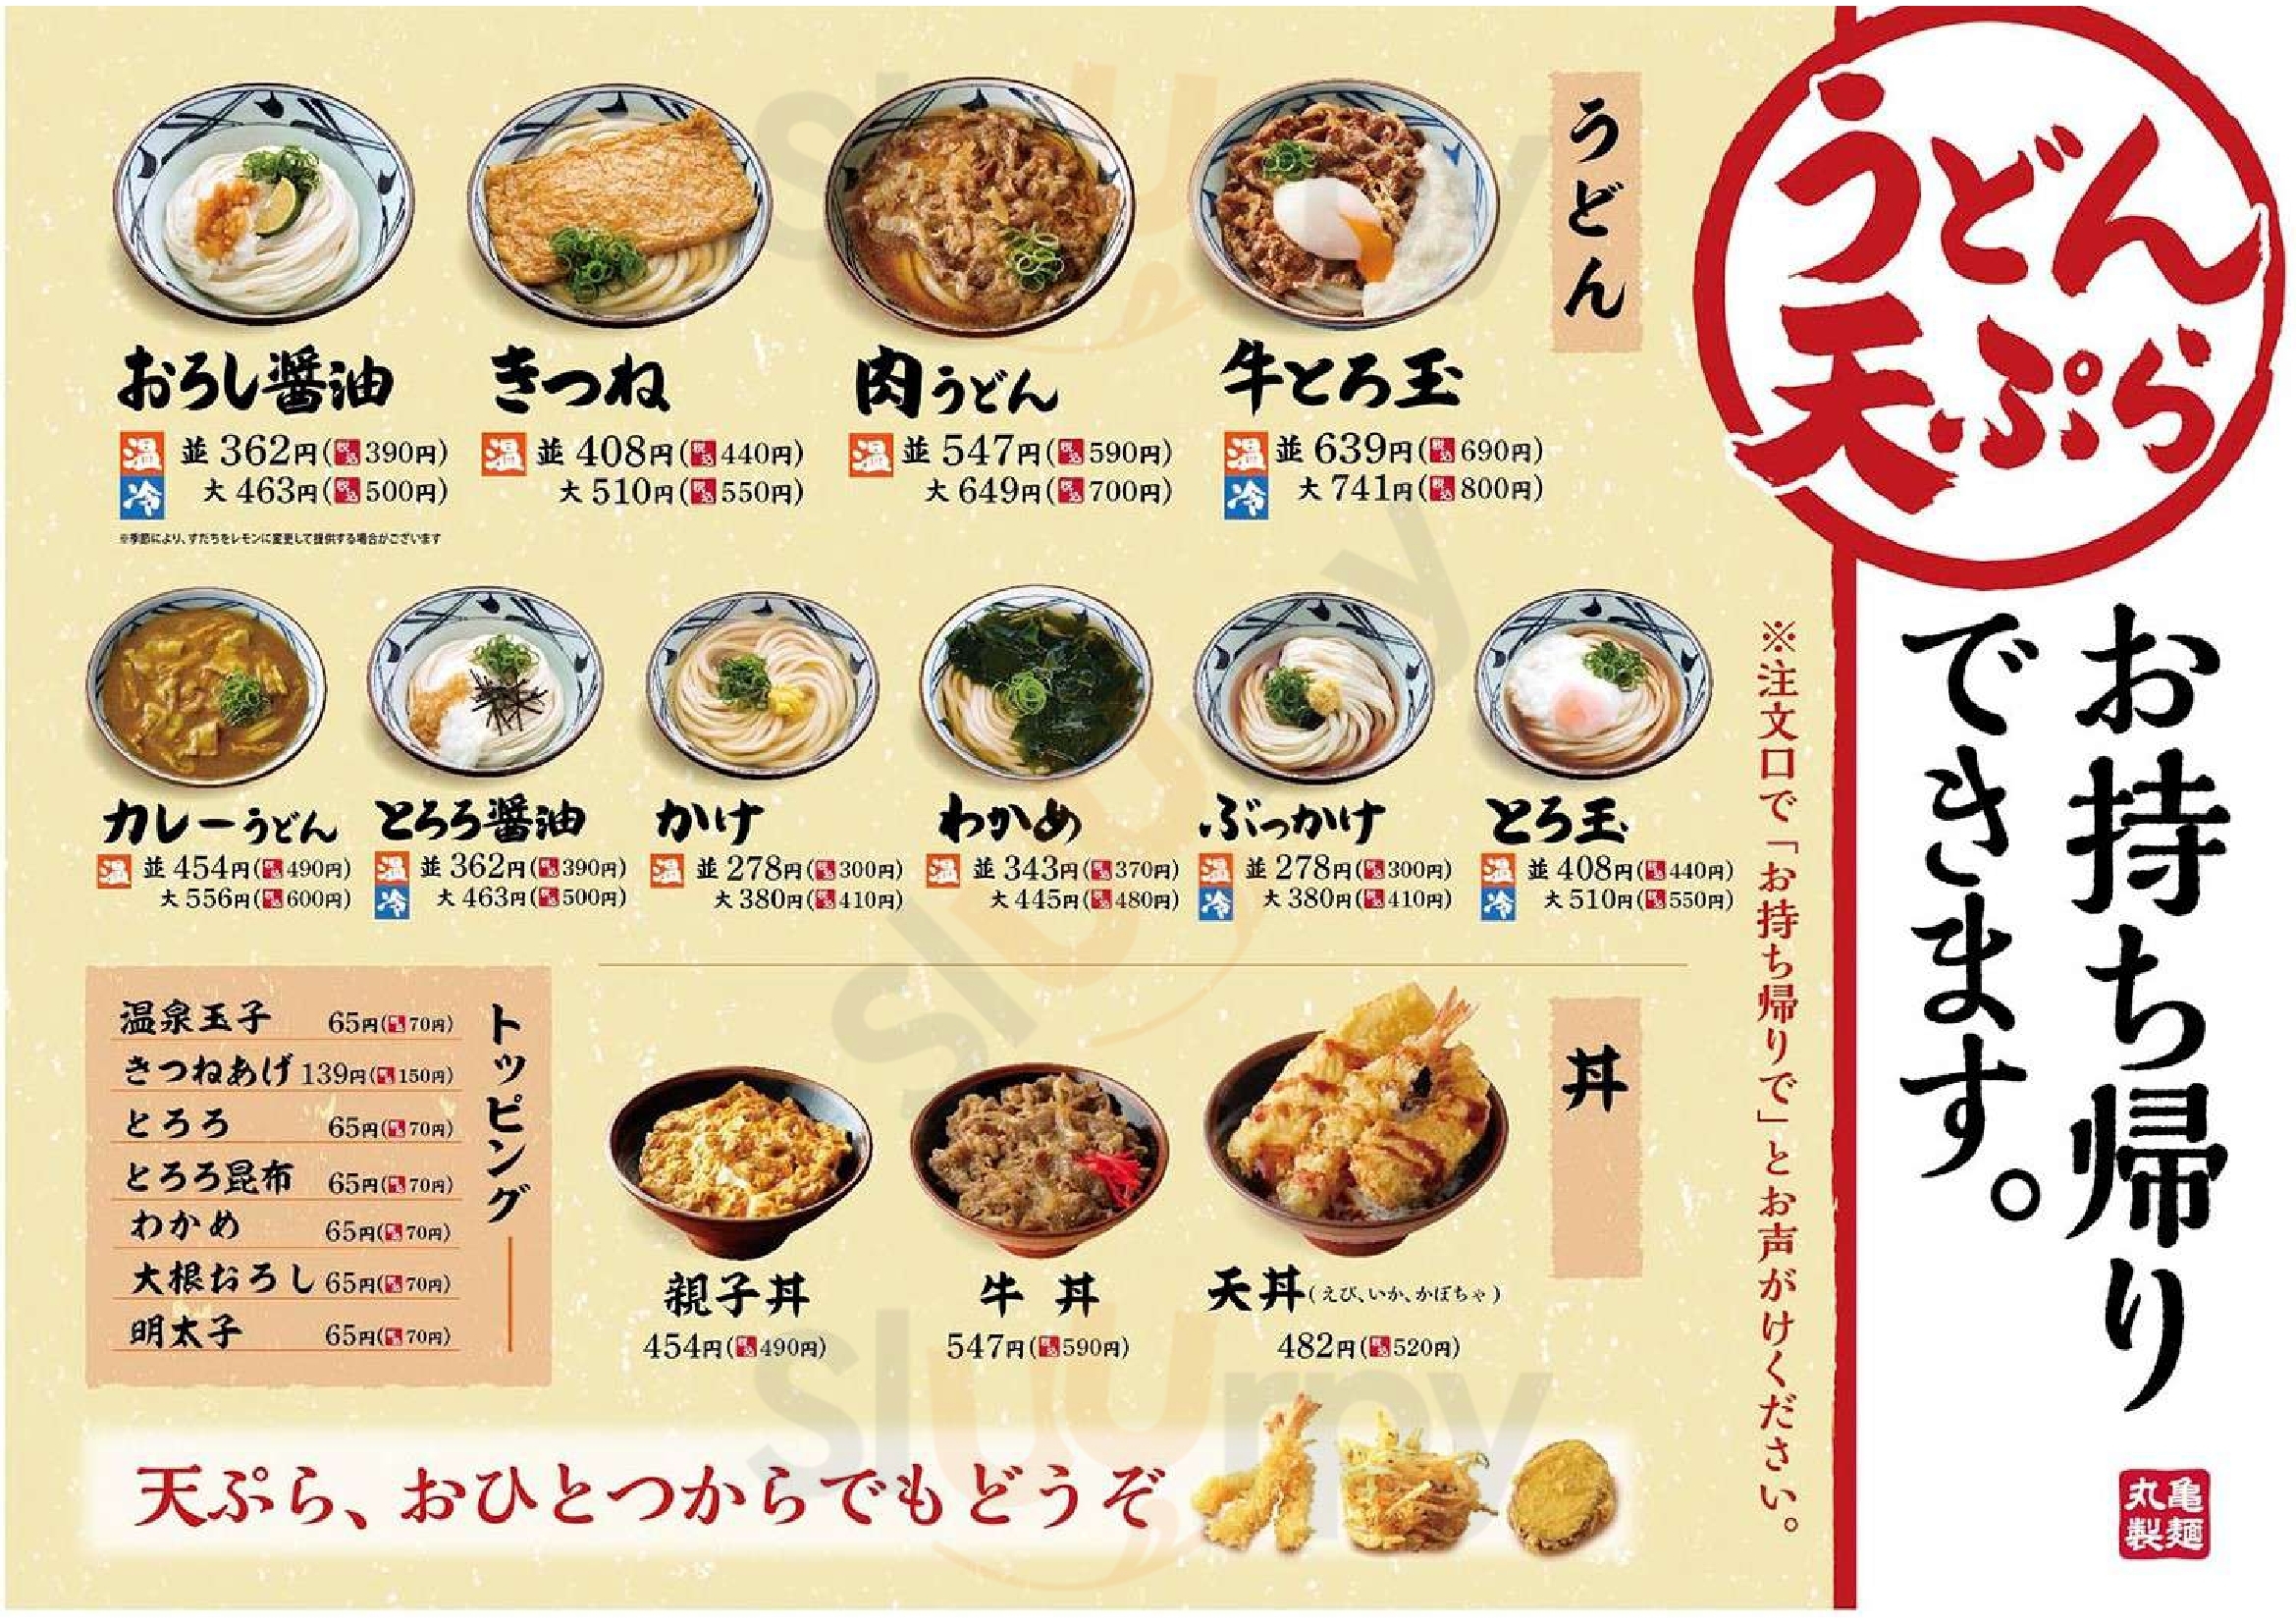 丸亀製麺 広島長束店 広島市 Menu - 1